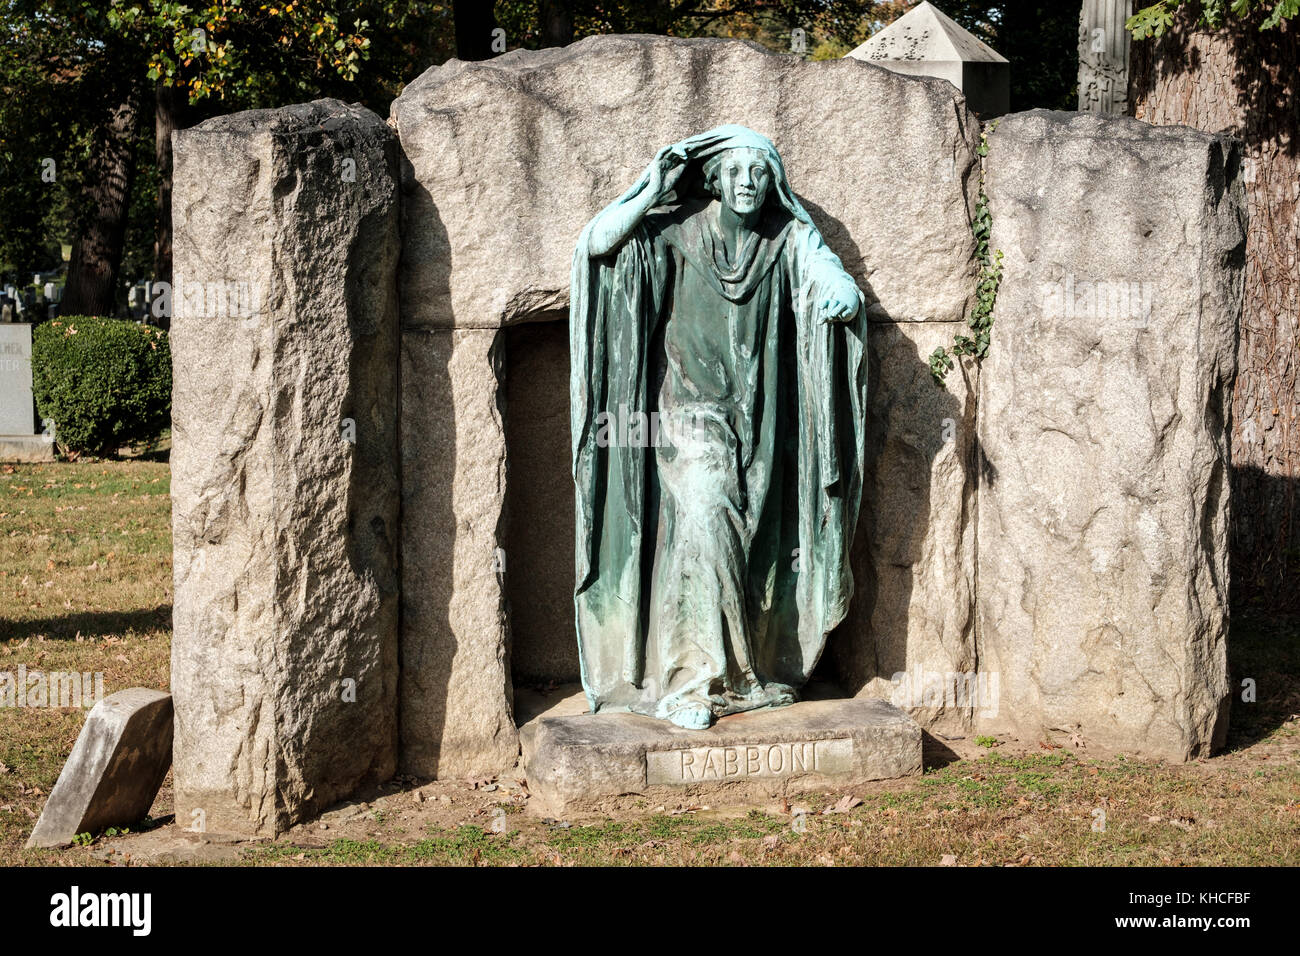 Rabboni-Ffoulke Memorial, une pierre tombale de Charles Matthews Ffoulke à Rock Creek Cemetery, par artiste Gutzon Borglum, Washington, D.C., USA. Banque D'Images